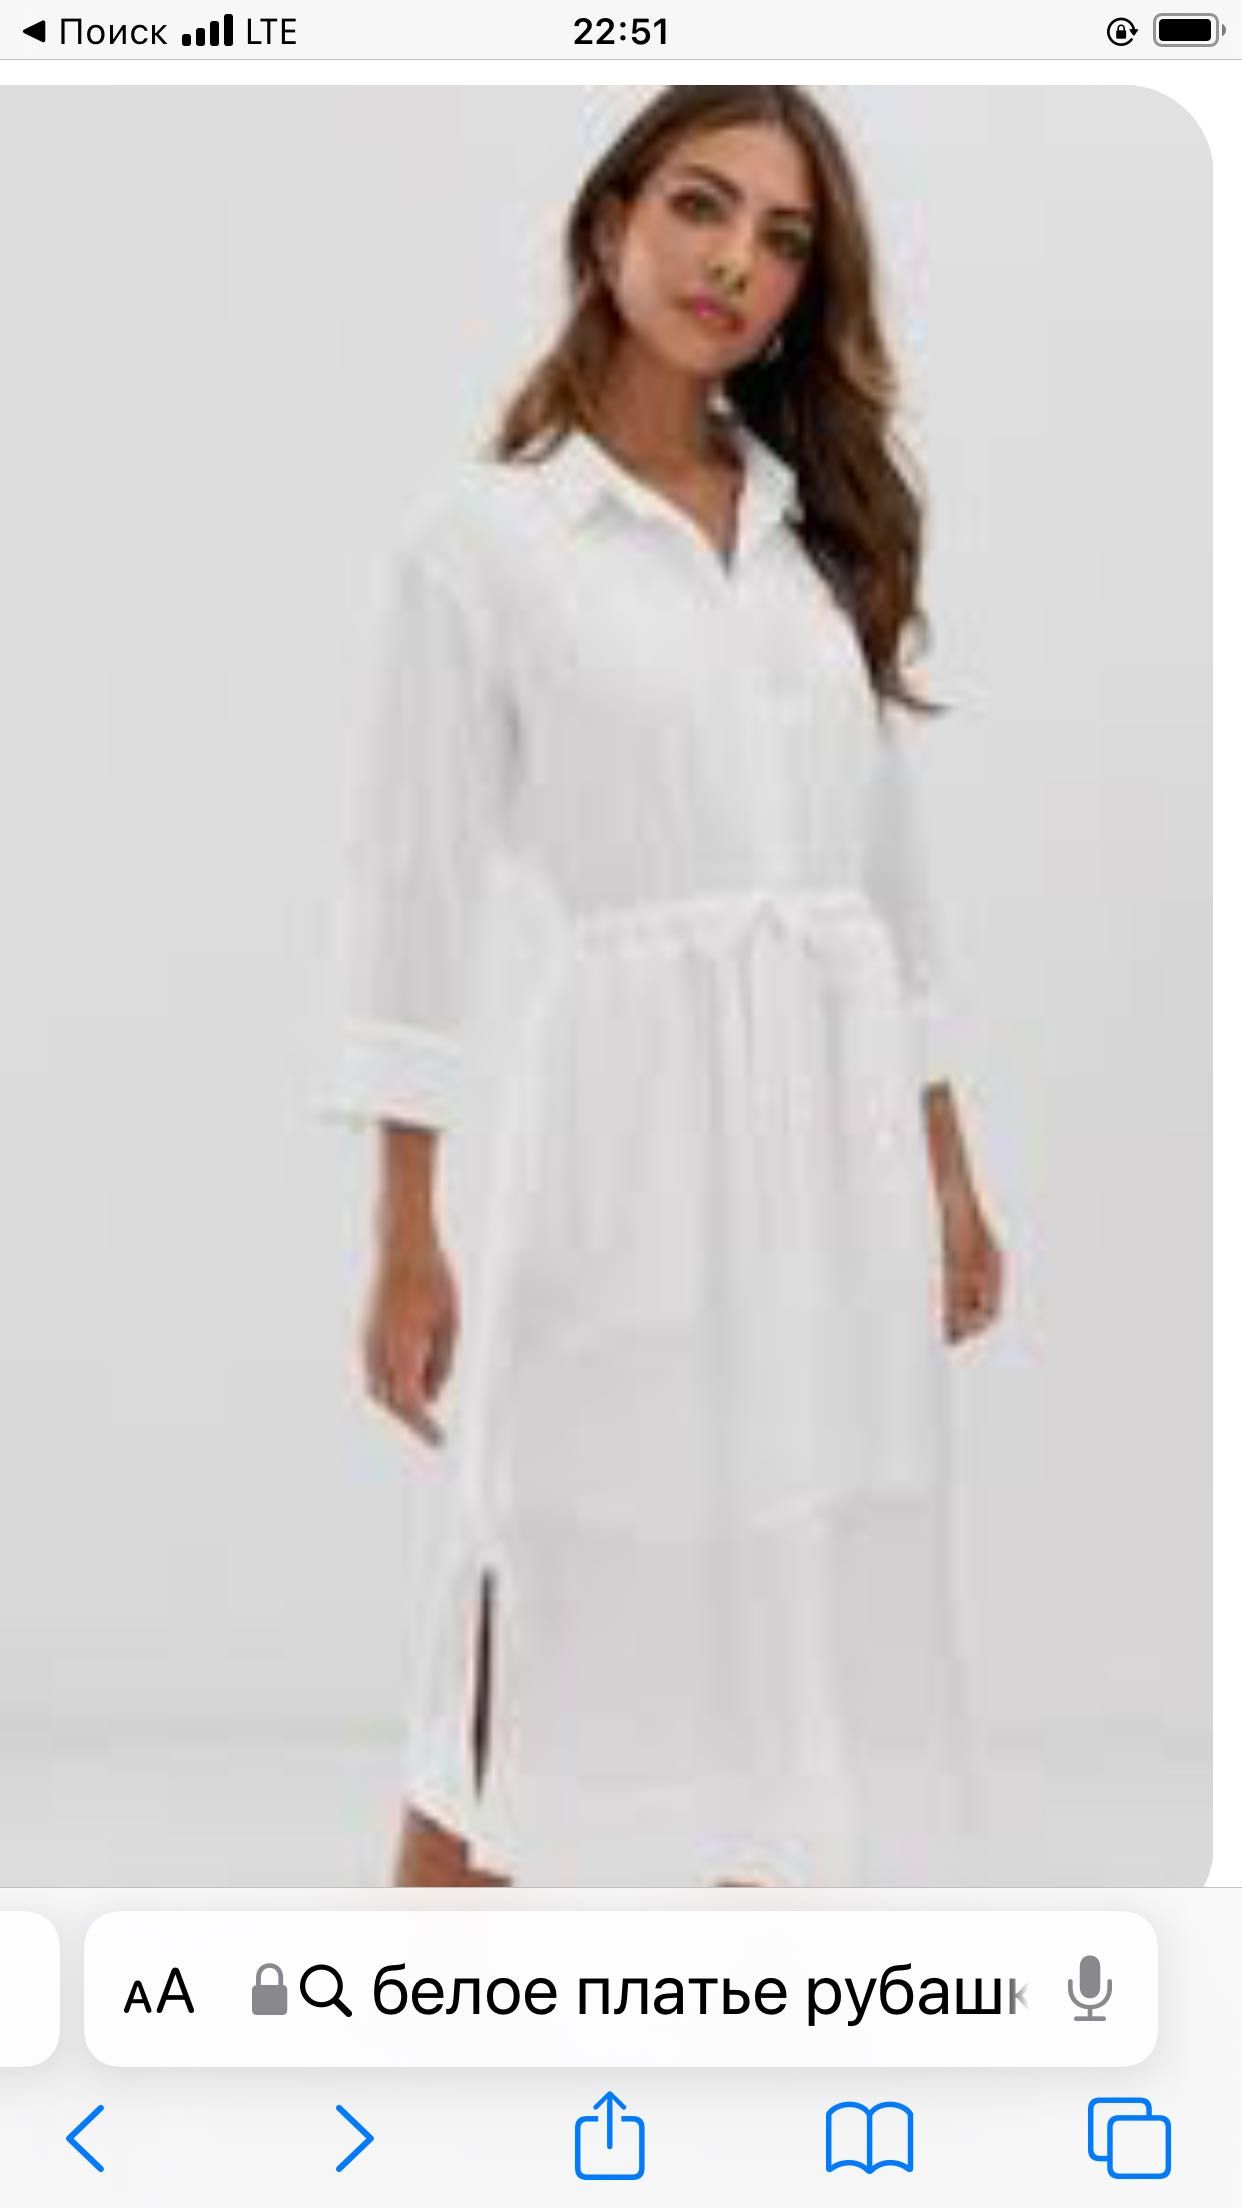 Платье рубашка белое брендовое МАССИМО ДУТТИ недорого скидка Бренд